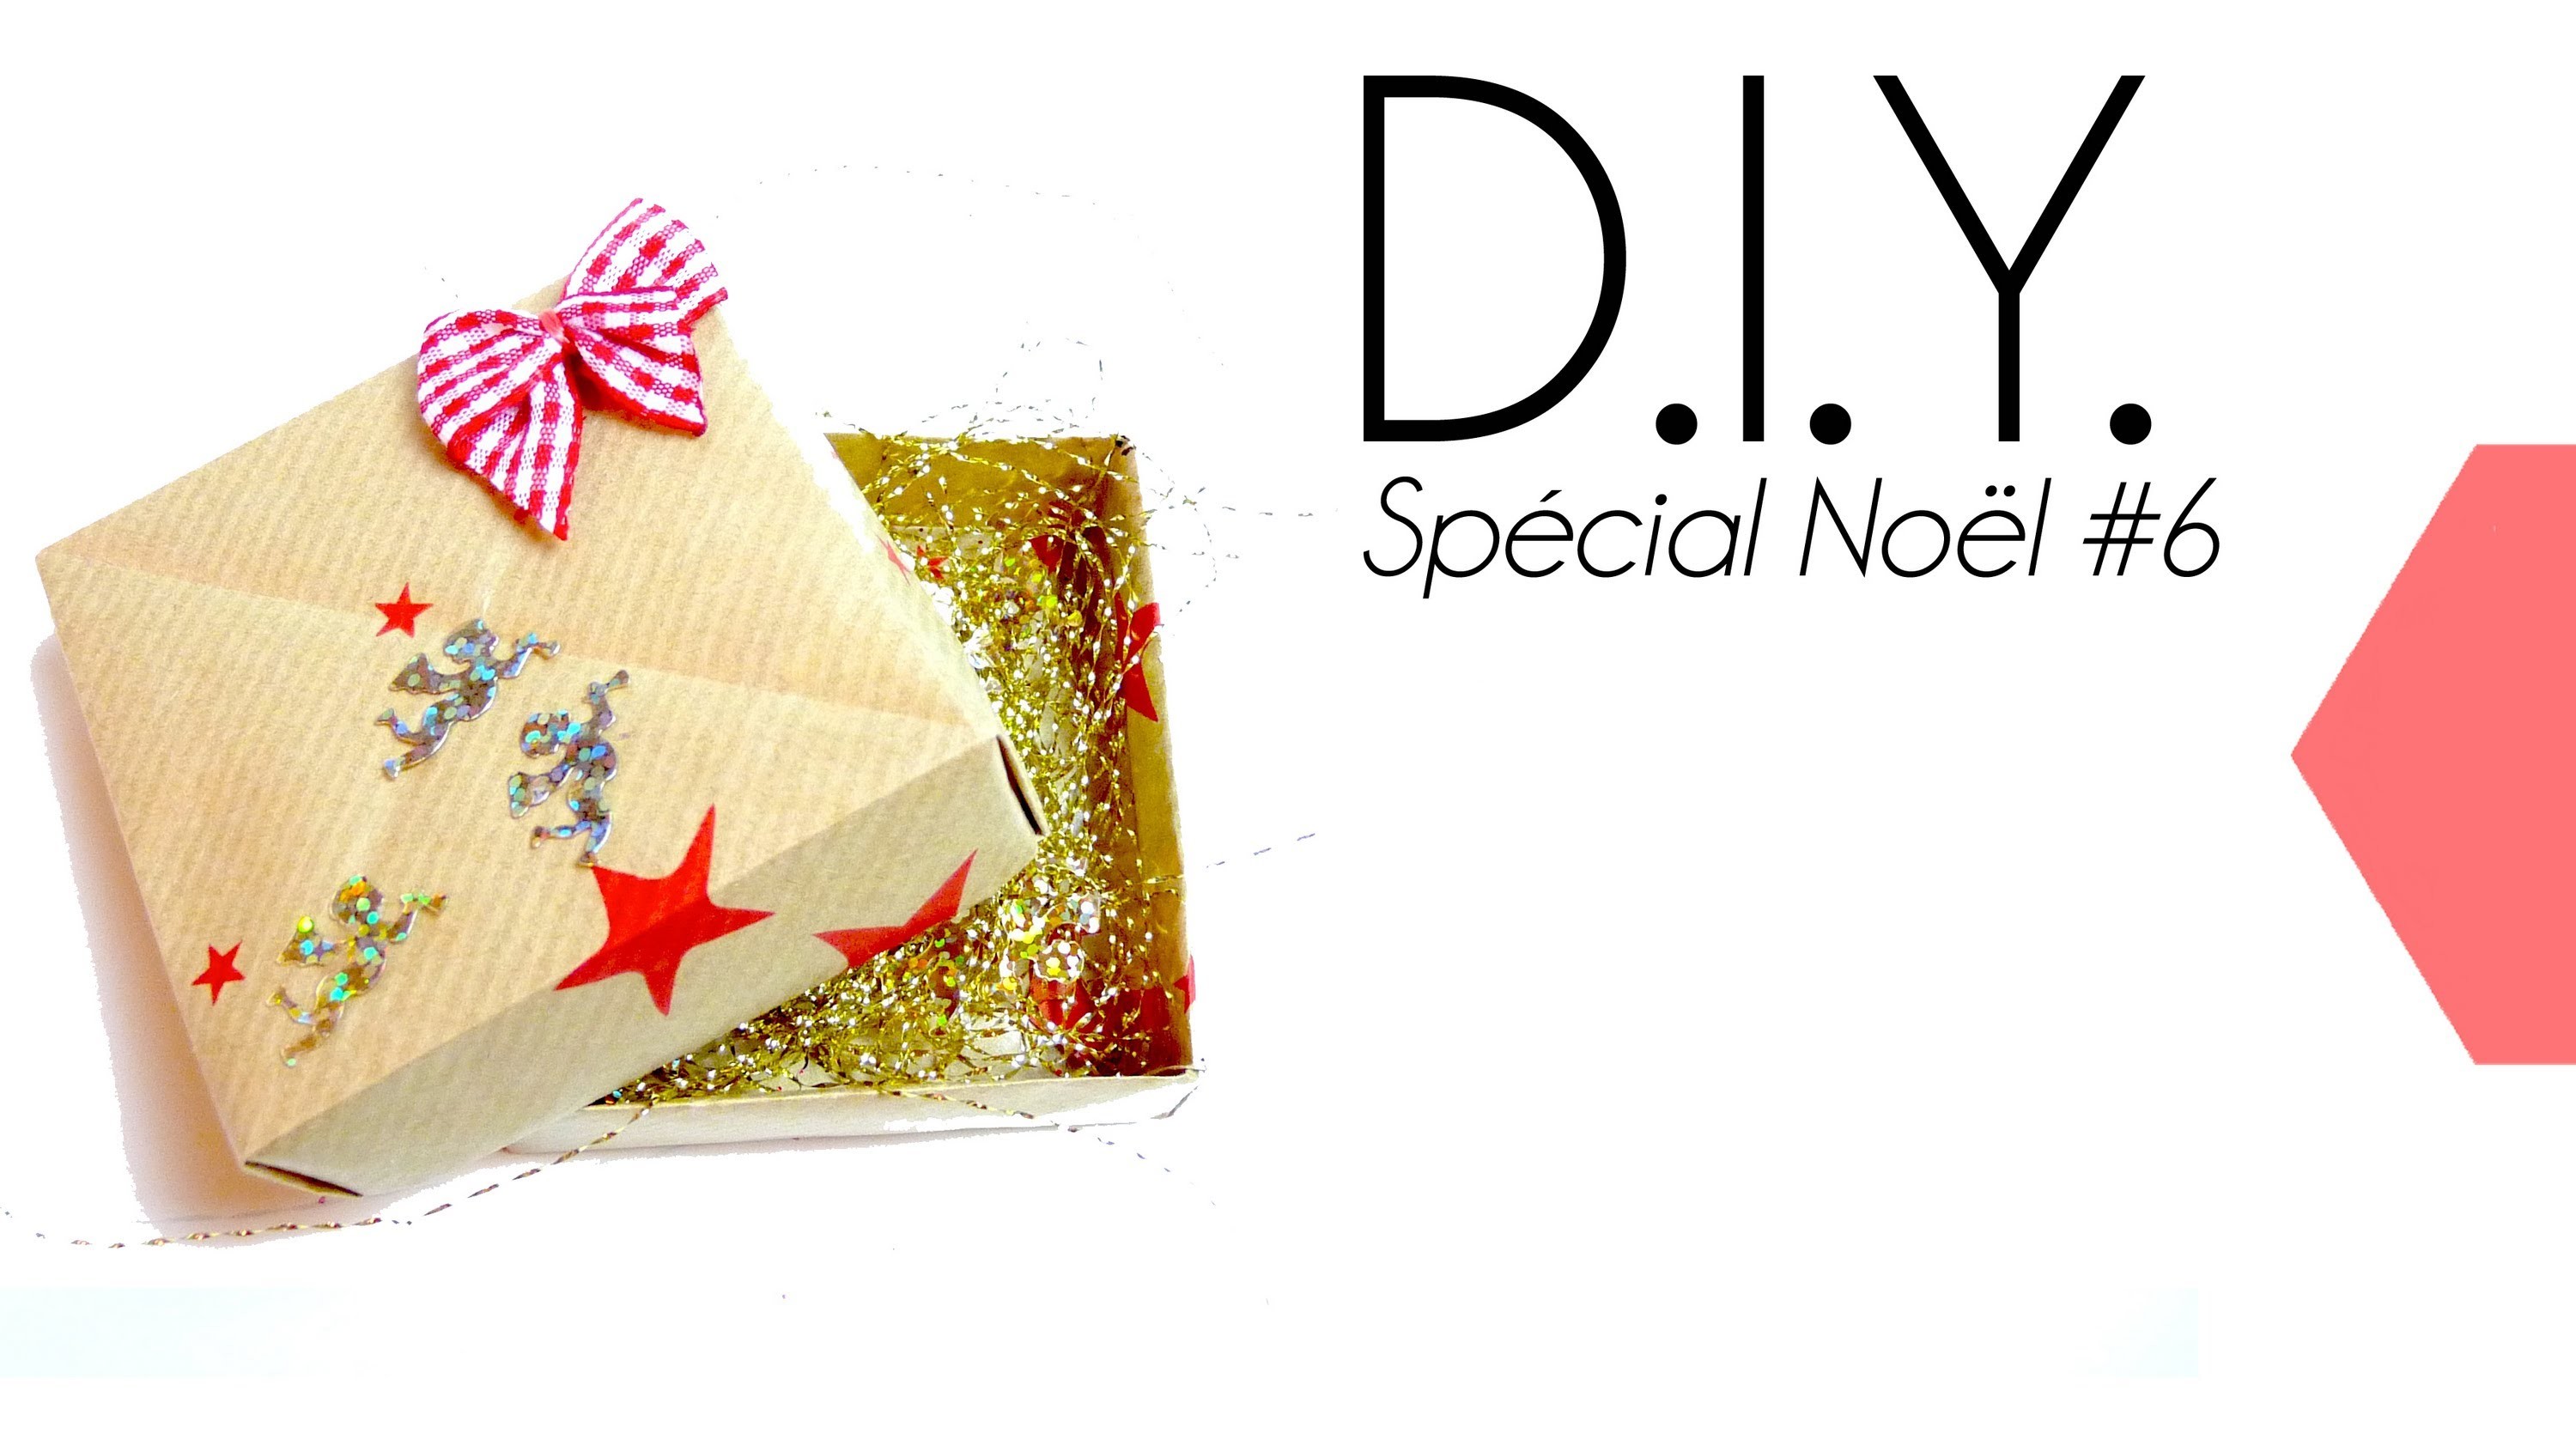 Tutoriel - DIY Special Noël #6 : Faire des paquets cadeaux originaux - Boite origami